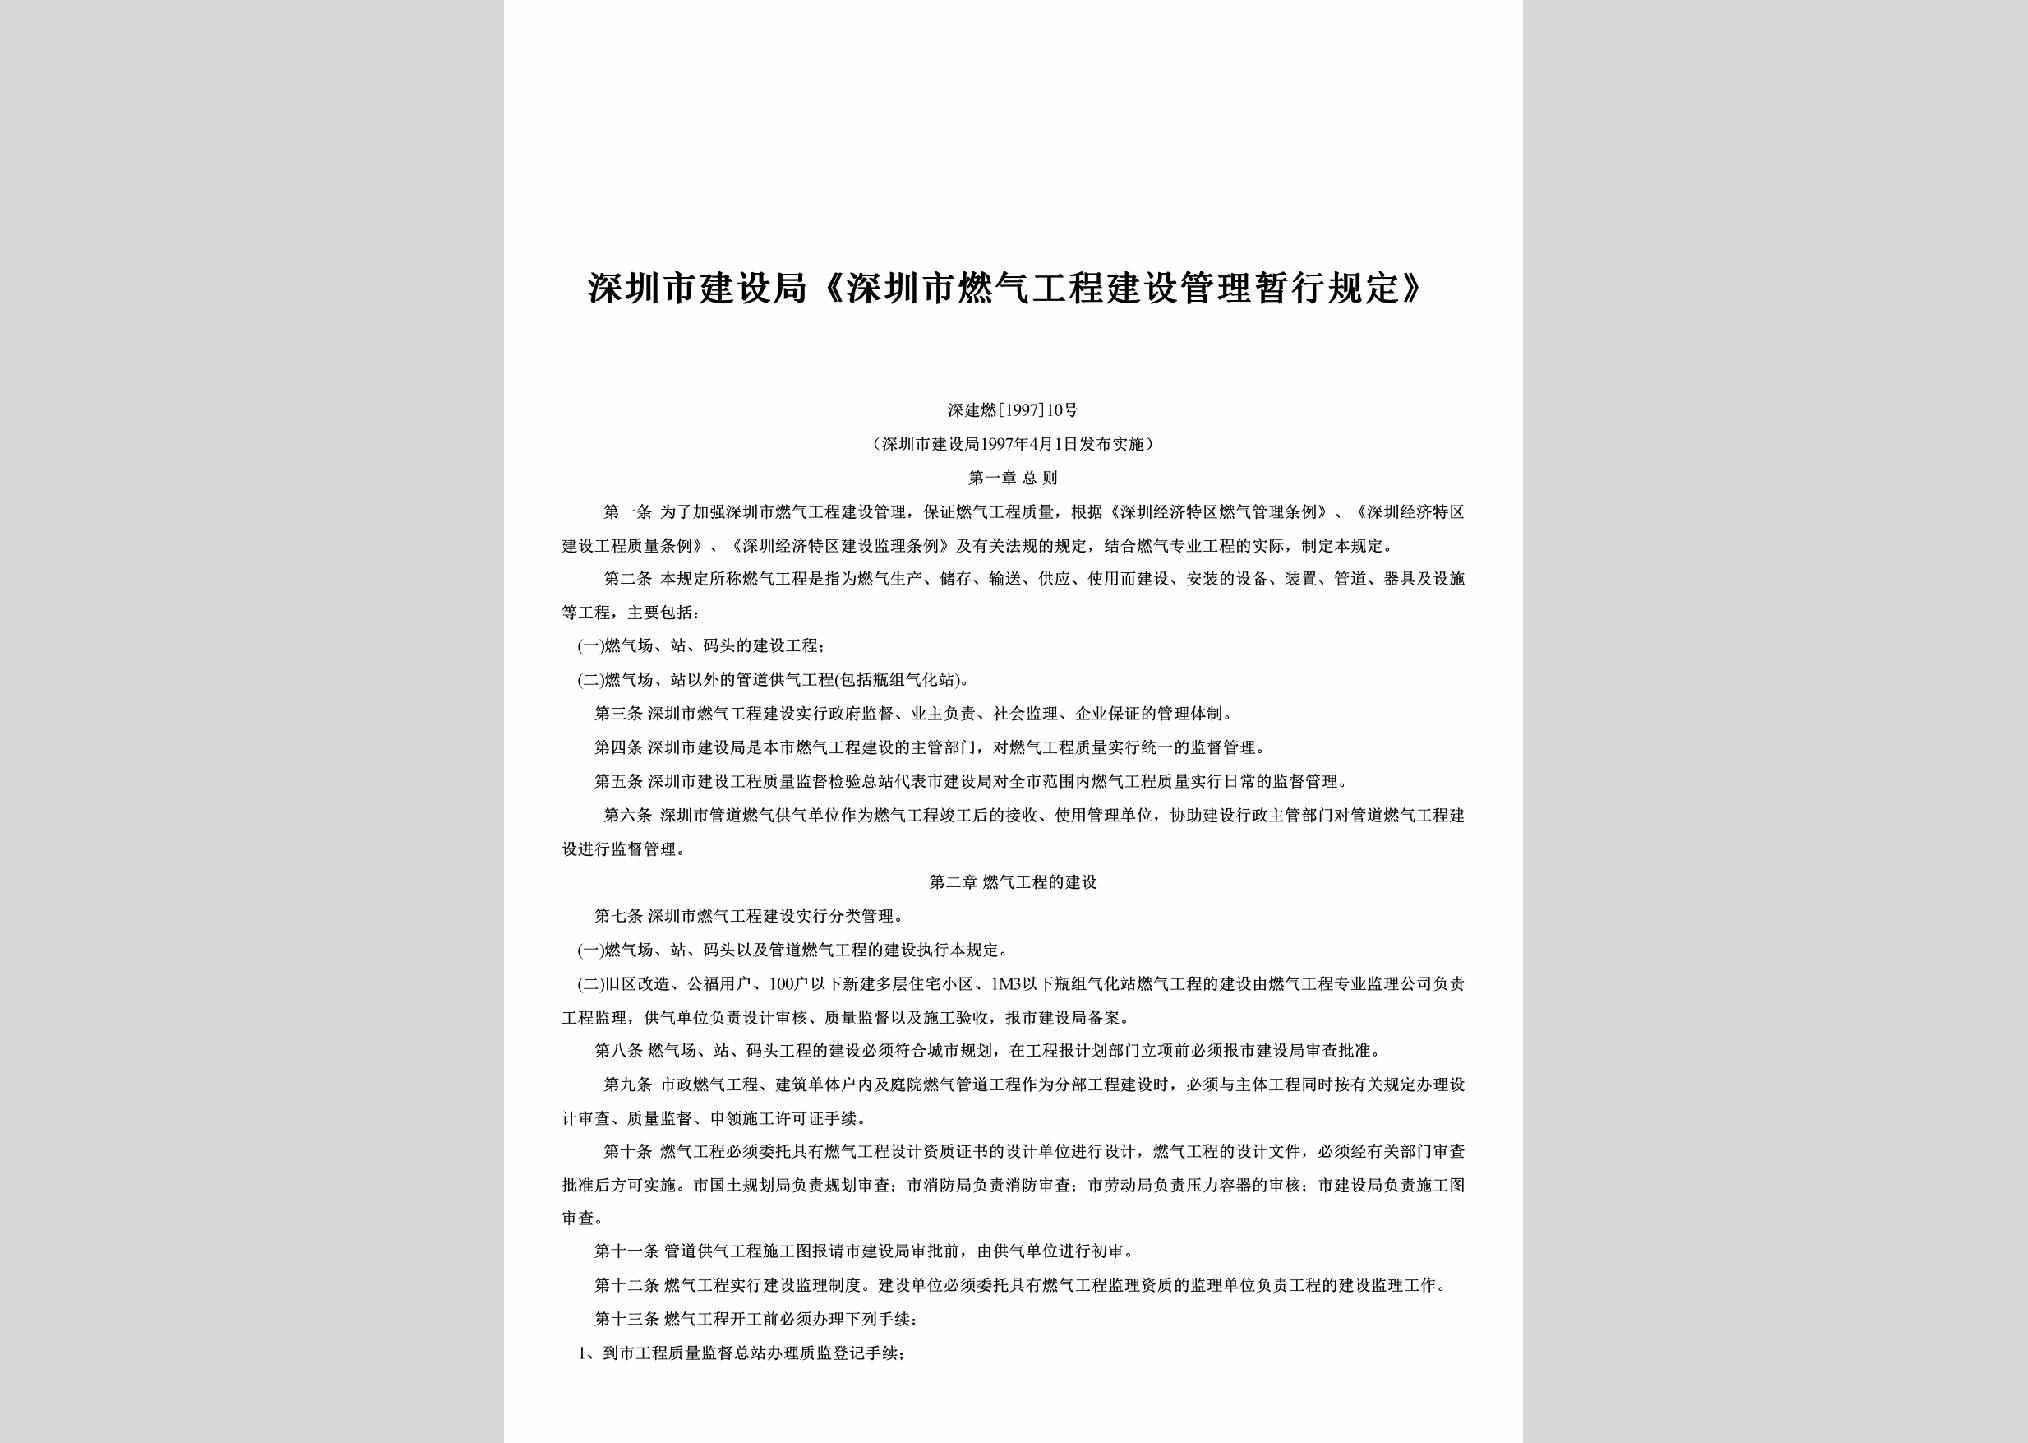 深建燃[1997]10号：《深圳市燃气工程建设管理暂行规定》